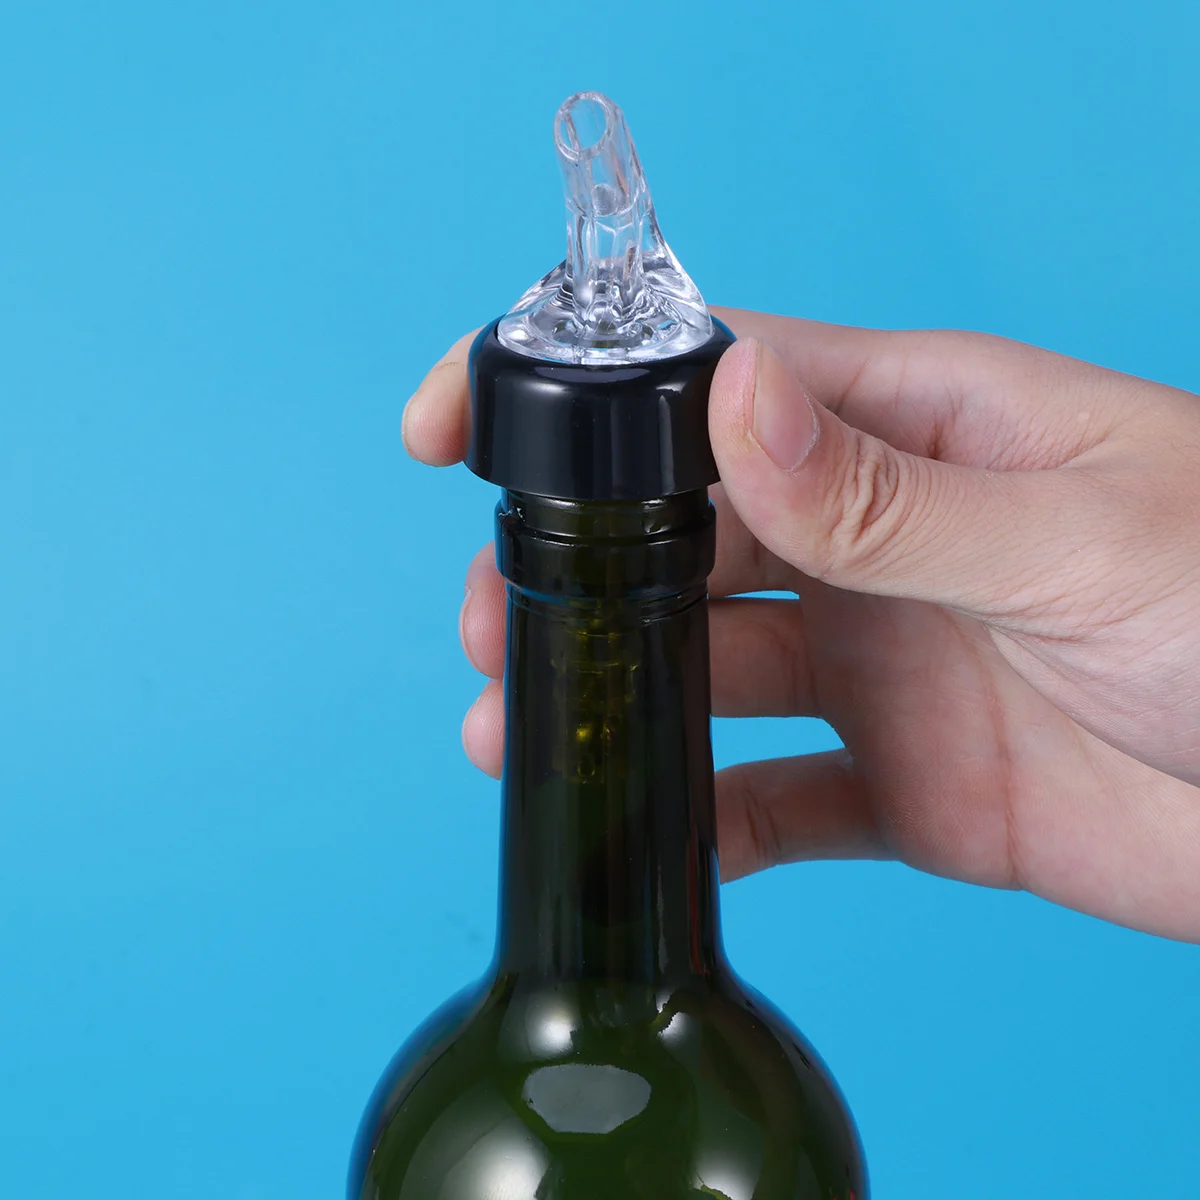 

Pourer Bottle Pour Spouts Pourers Measure Spout Tool Shot Bottles Measured Guiding Condiment Stopper Dispenser Drink Automatic